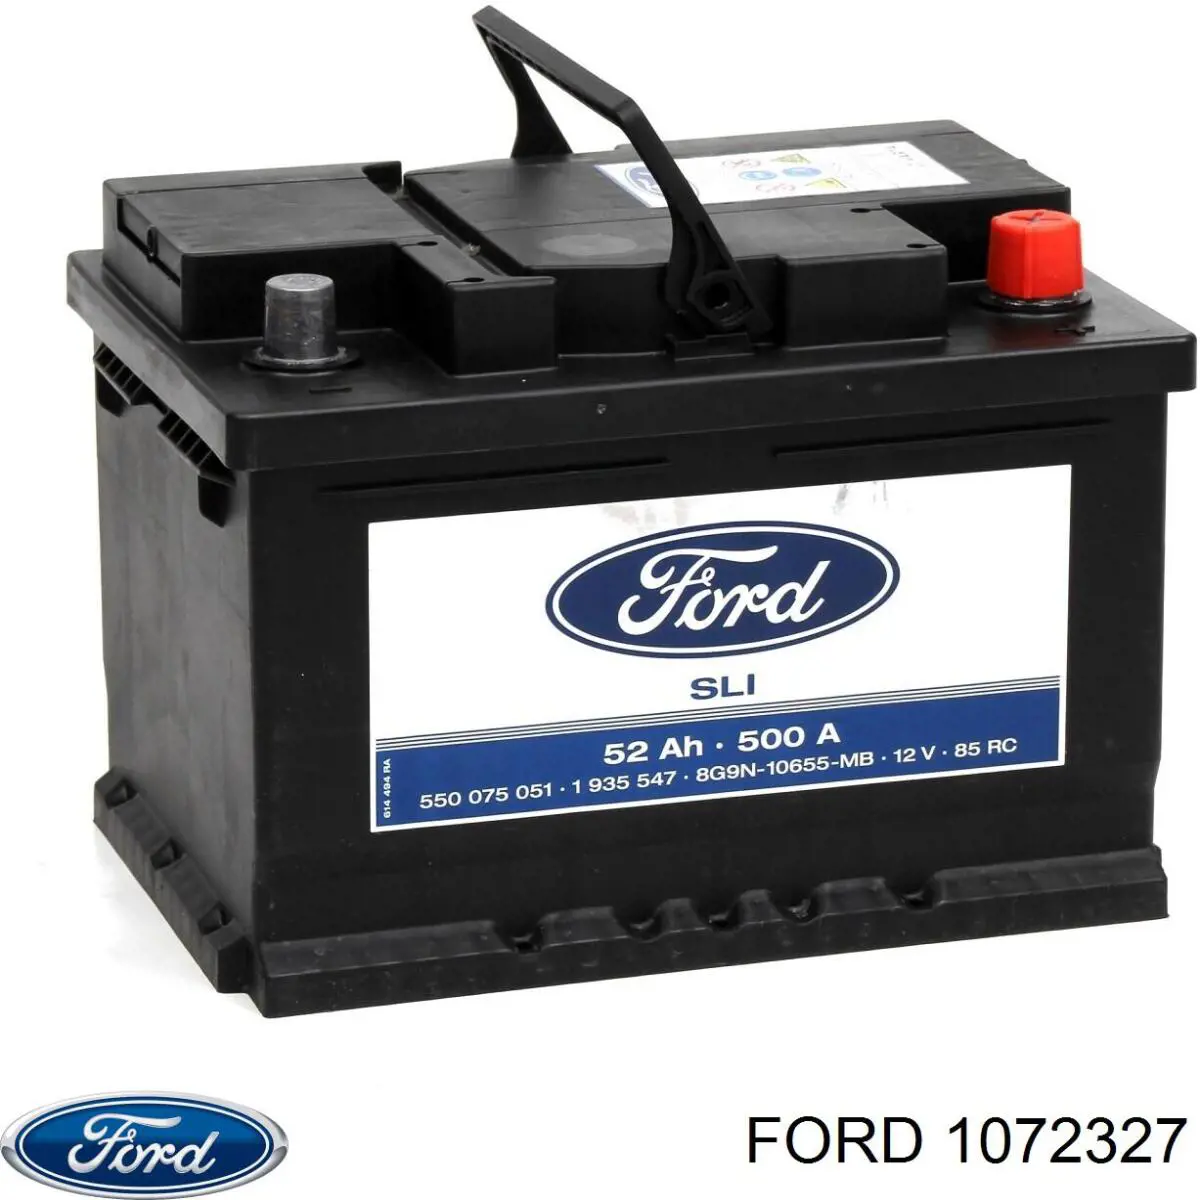 1072331 Ford bateria recarregável (pilha)